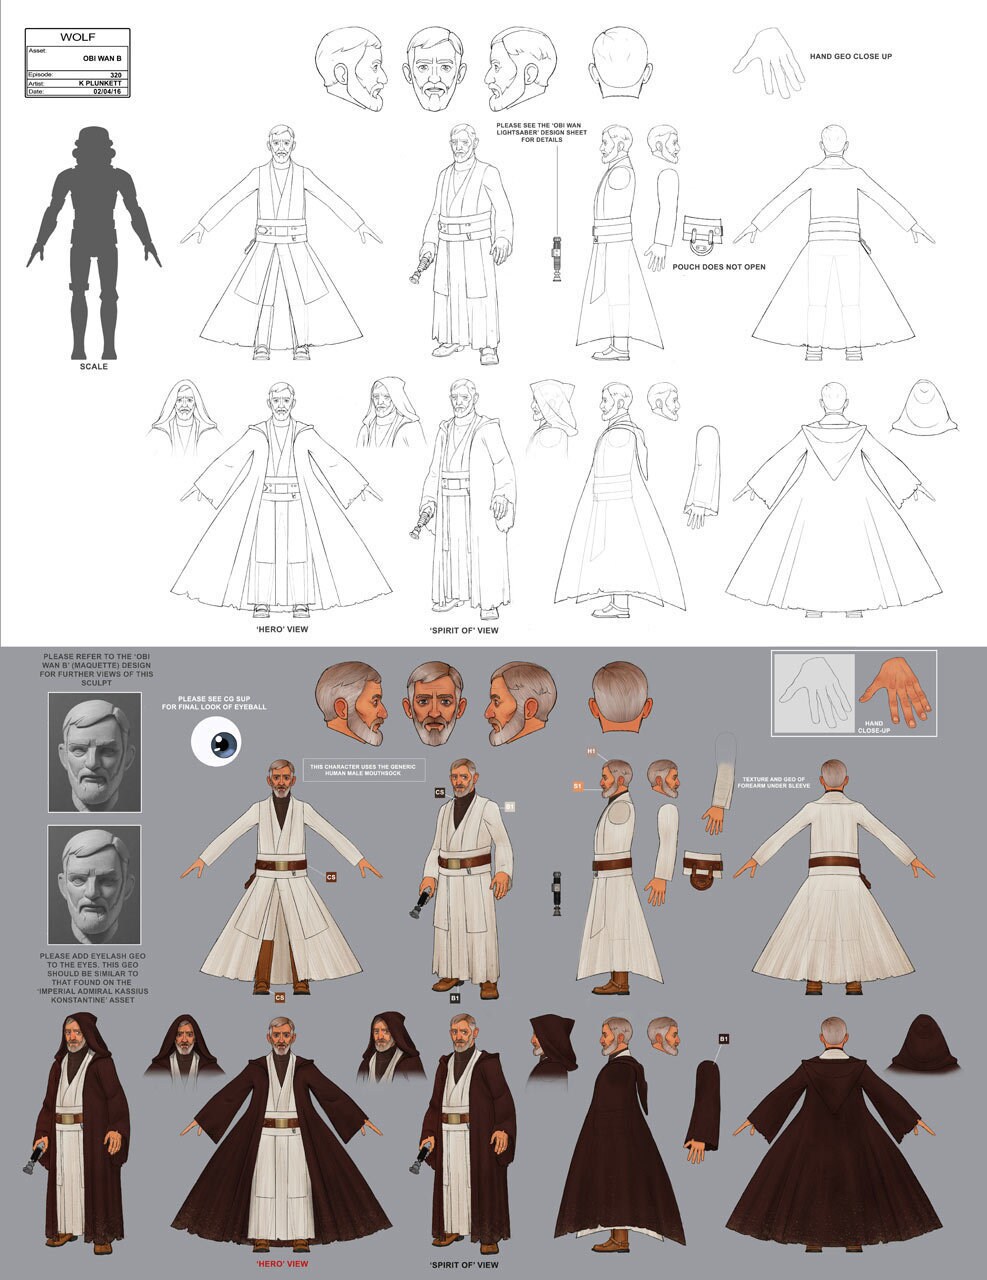 Obi-Wan Kenobi full character concept art by Kilian Plunkett.